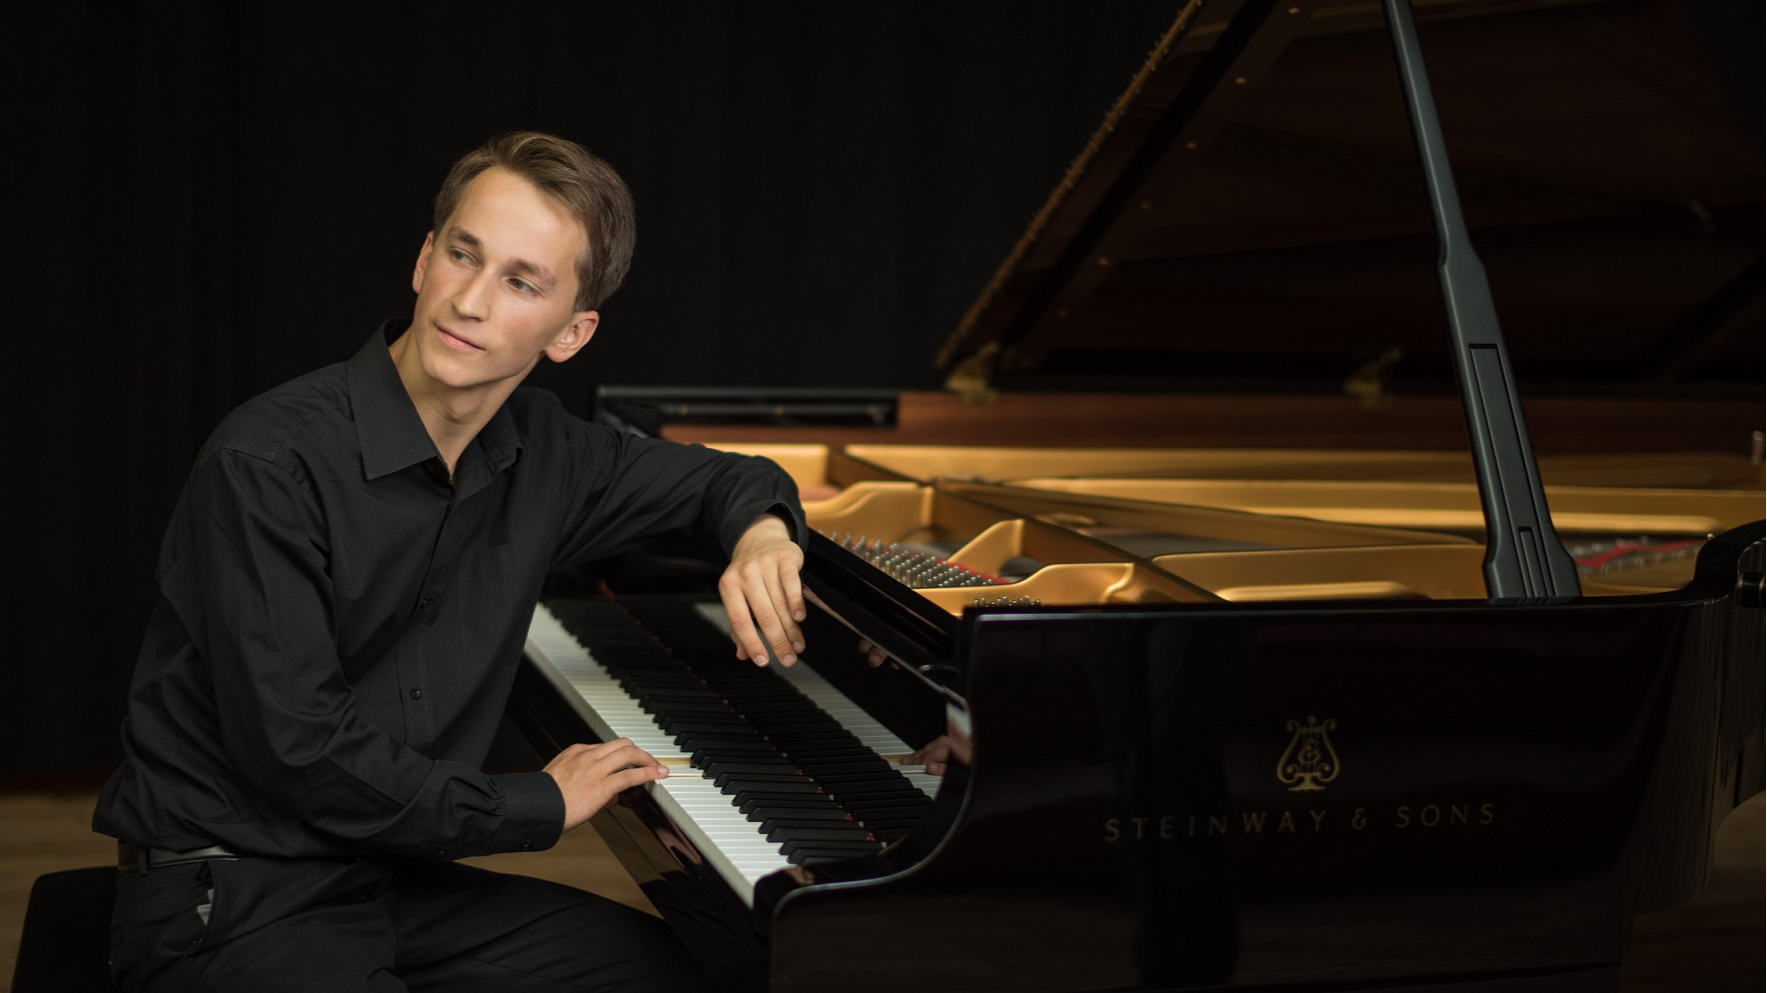 Festivālā “Vīnes klasika” uzstāsies talantīgais pianists Daumants Liepiņš